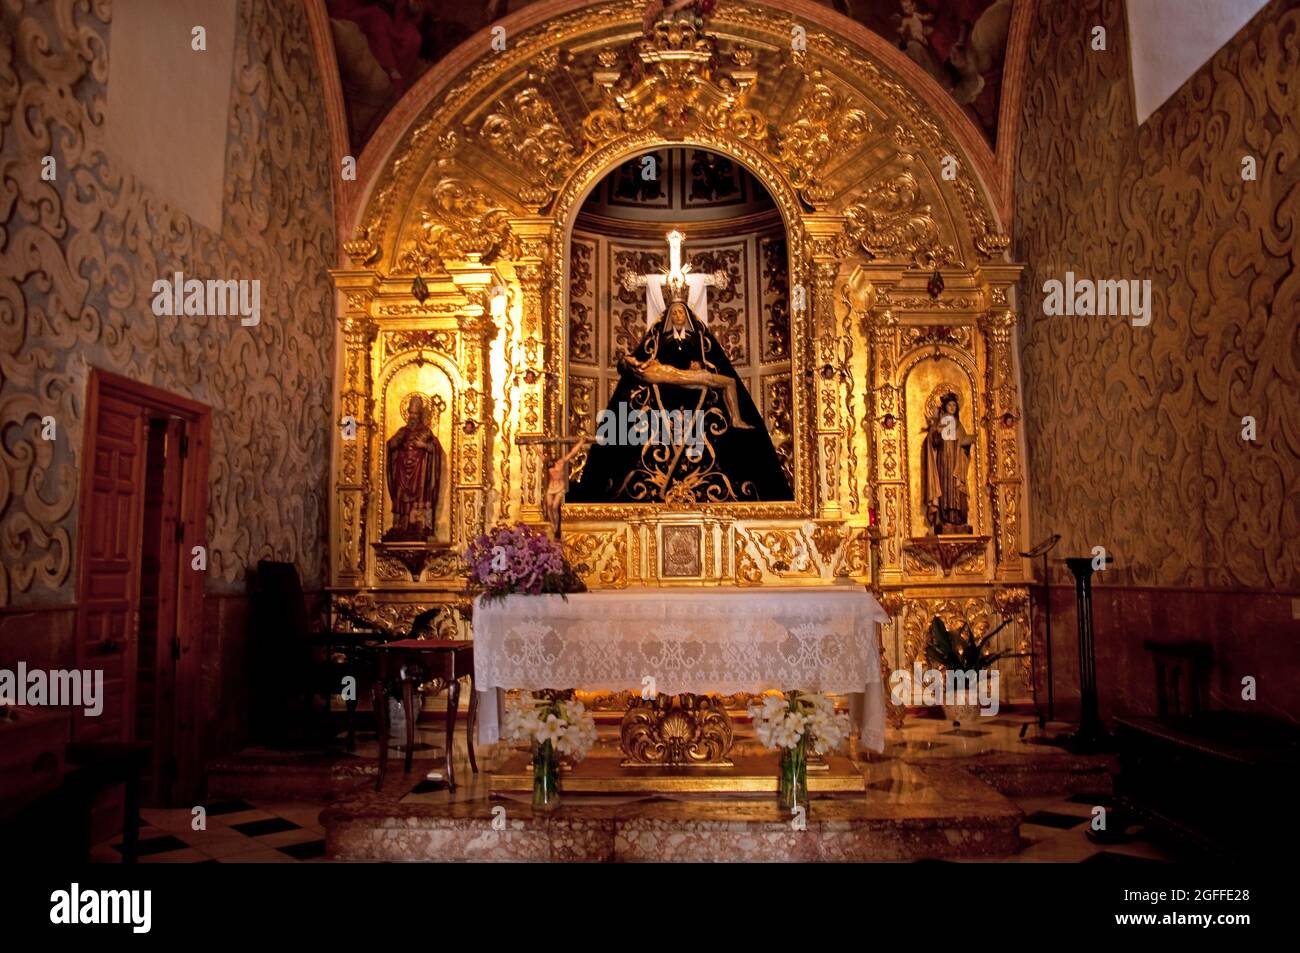 Altar, La Ermita de Nuestra Señora de Las Angustias (Chapel of Our Lady of Anguish), Nerja, Province of Malaga, Andalucia, Spain Stock Photo